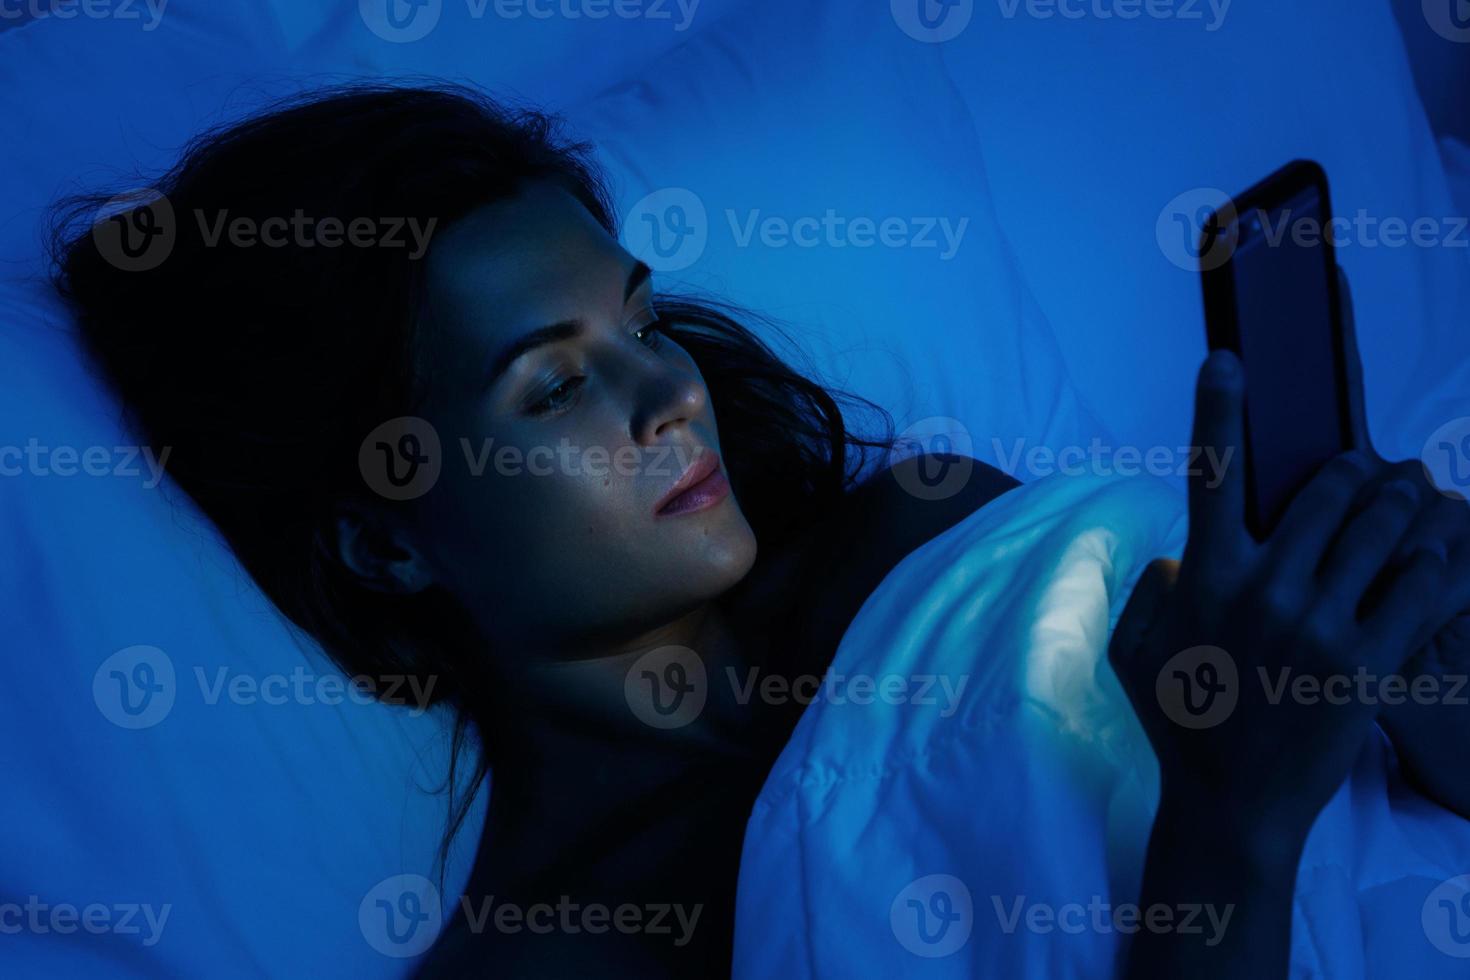 mujer joven está usando un teléfono inteligente en la noche en la cama foto